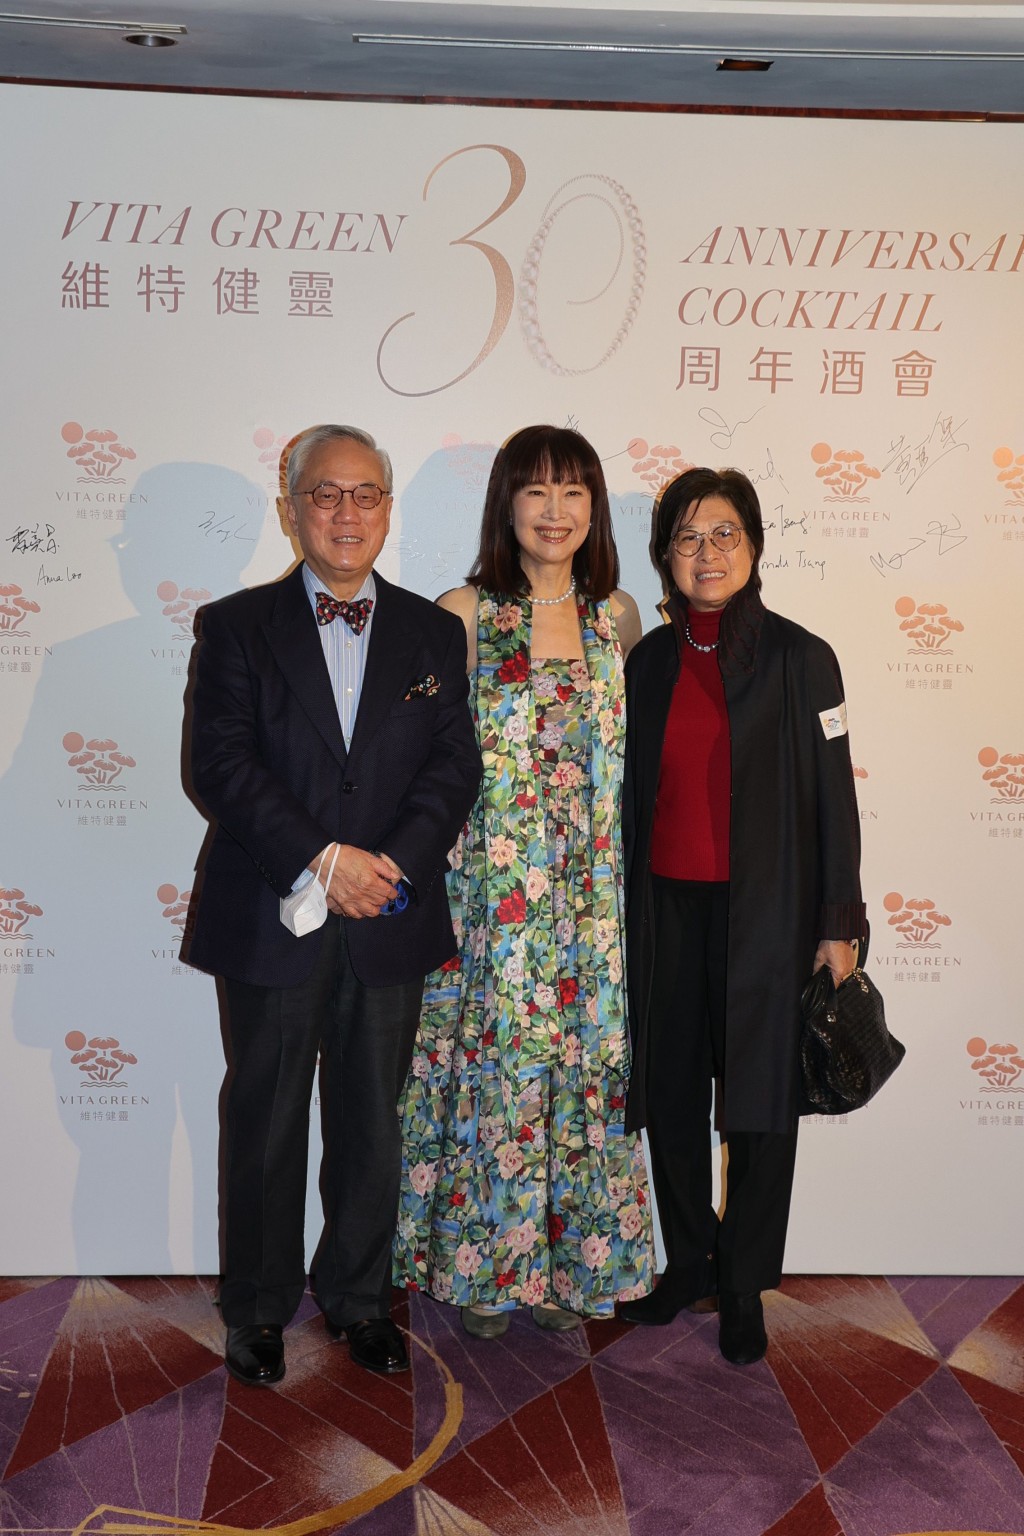 维特健灵健康产品有限公司董事长陈曦龄博士与曾荫权先生及夫人。